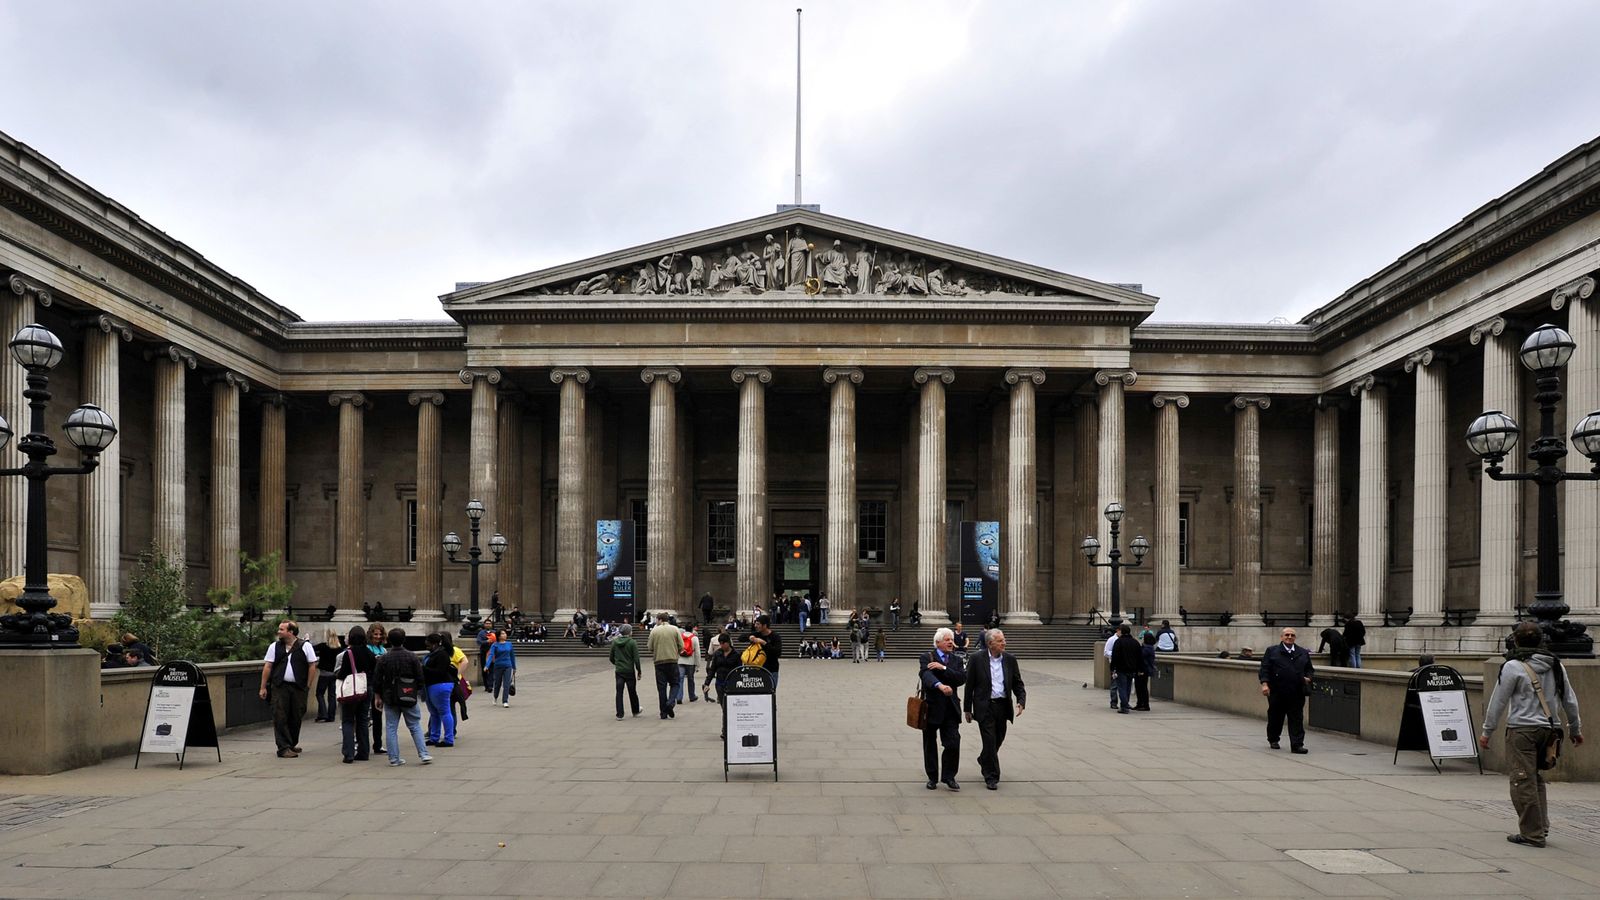 Le British Museum met en garde contre les vols depuis des années, selon un bijoutier britannique